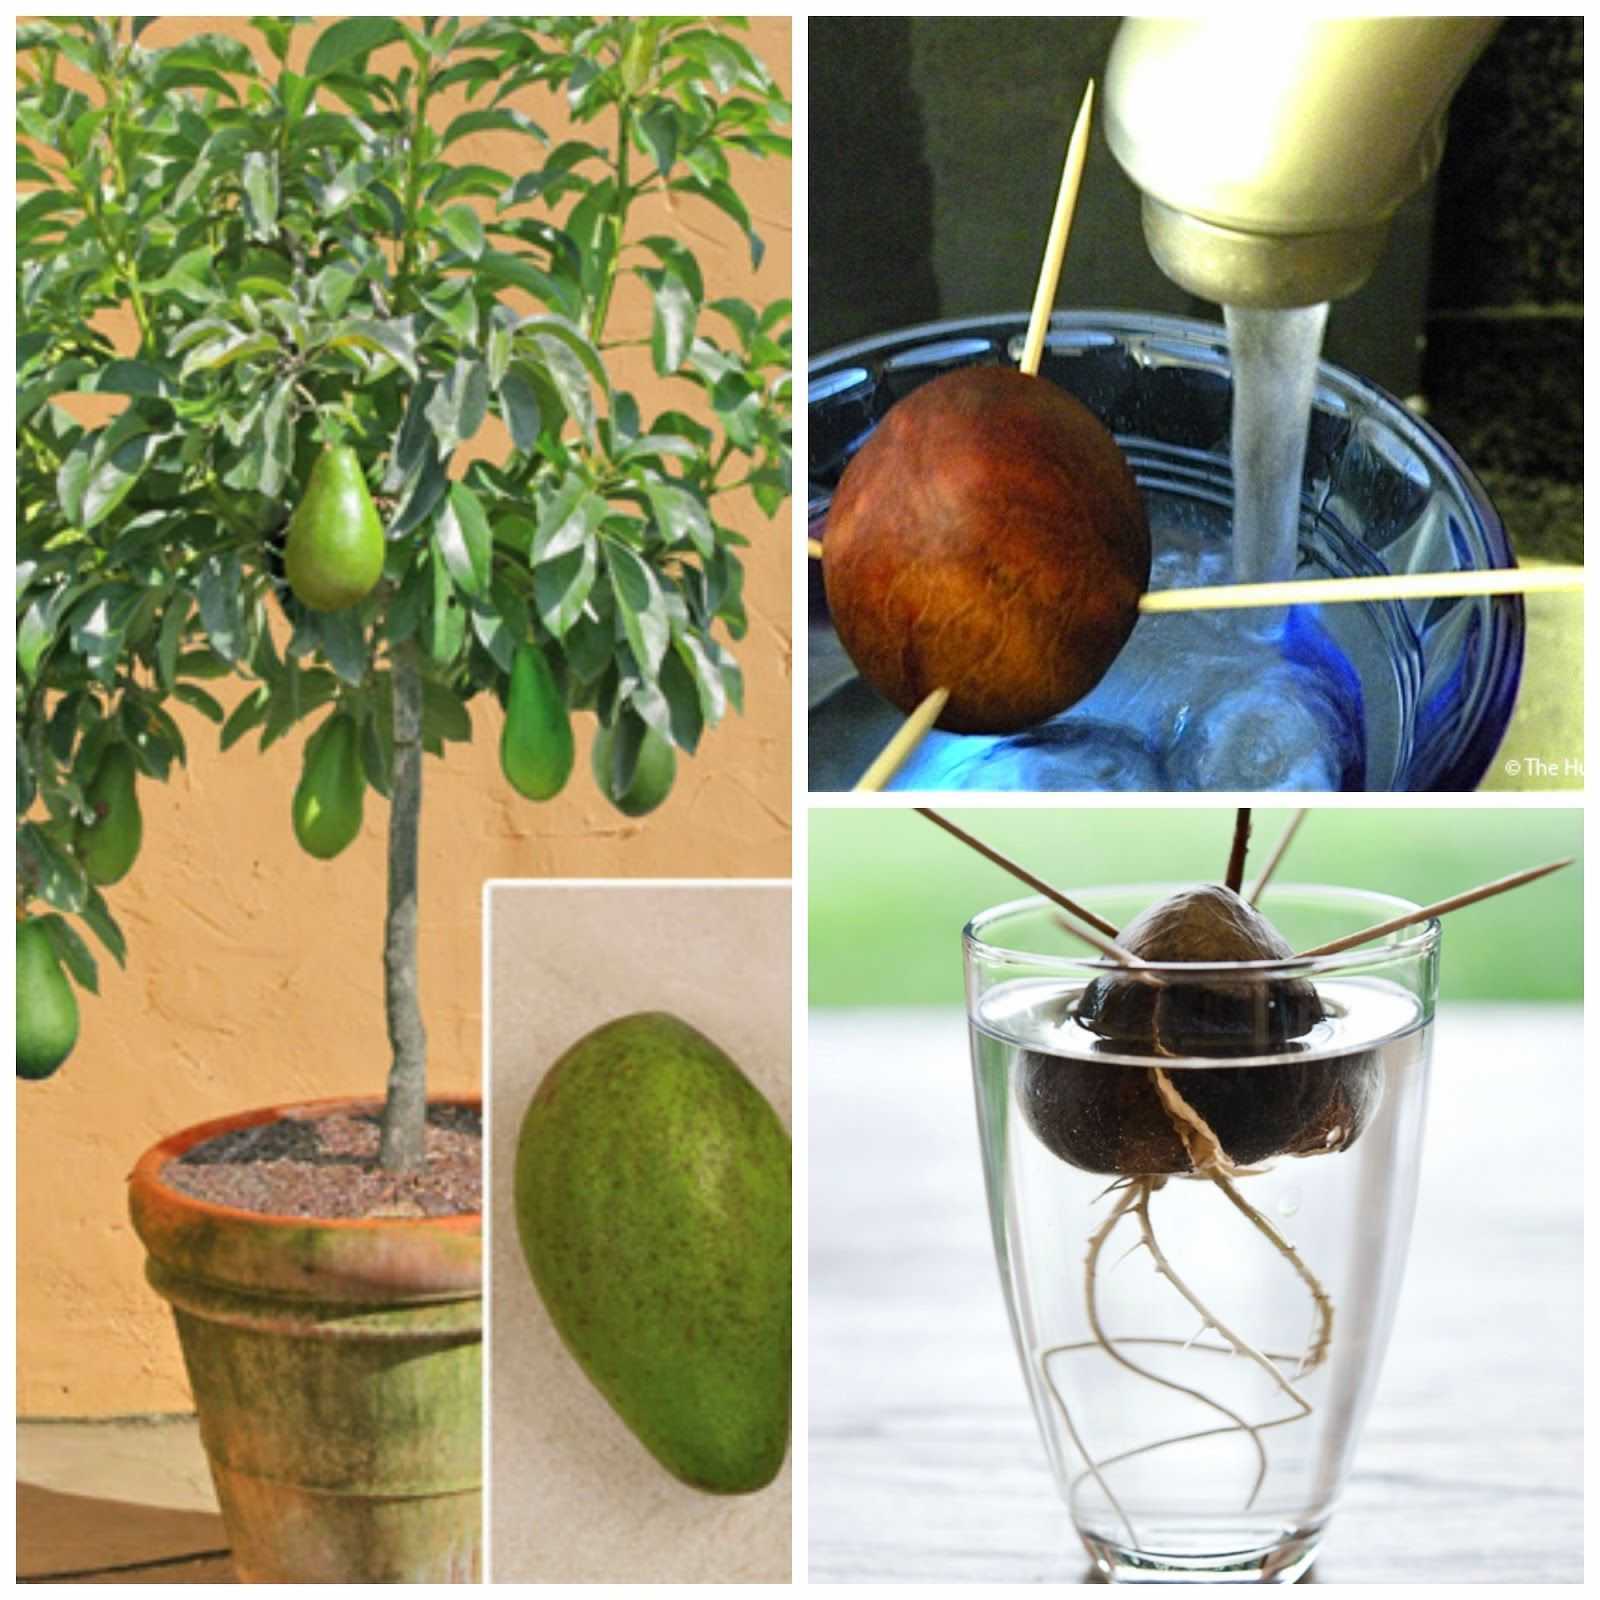 О уходе и выращивании растения авокадо в домашних условиях: полив и прищипывание